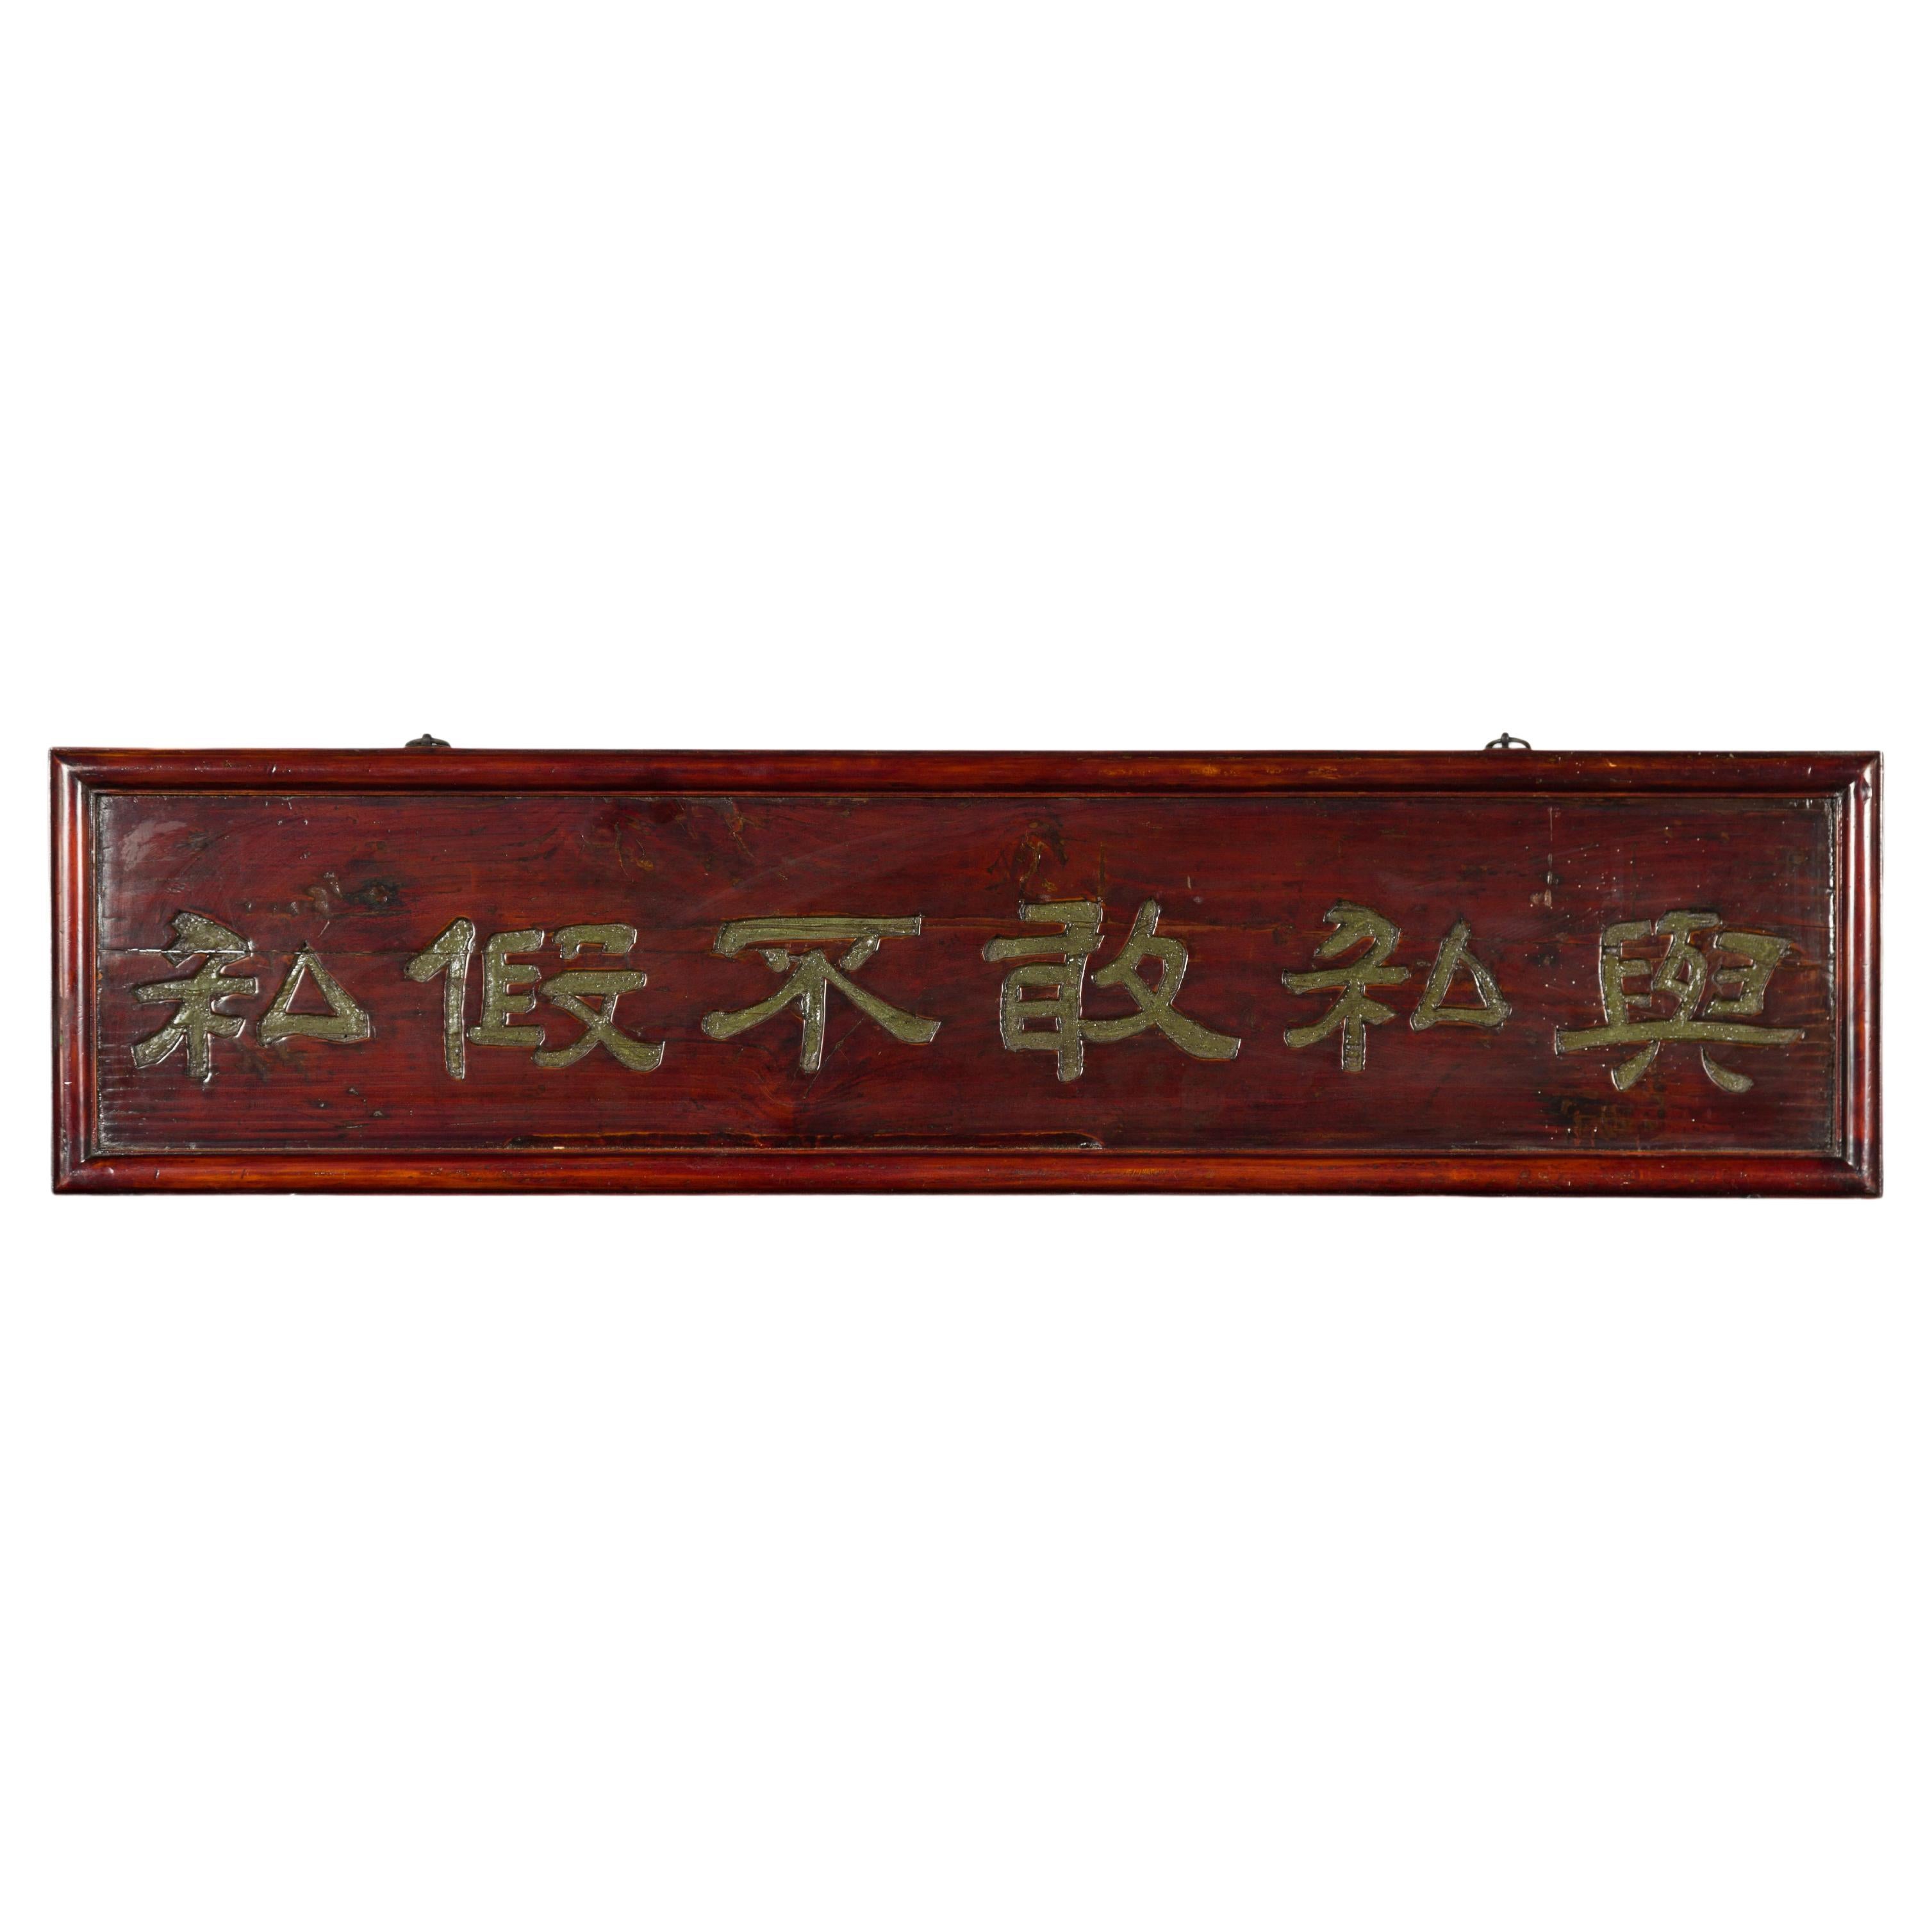 Chinesisches Vintage-Shop-Schild mit vergoldeter Kalligrafie auf lackiertem Grund